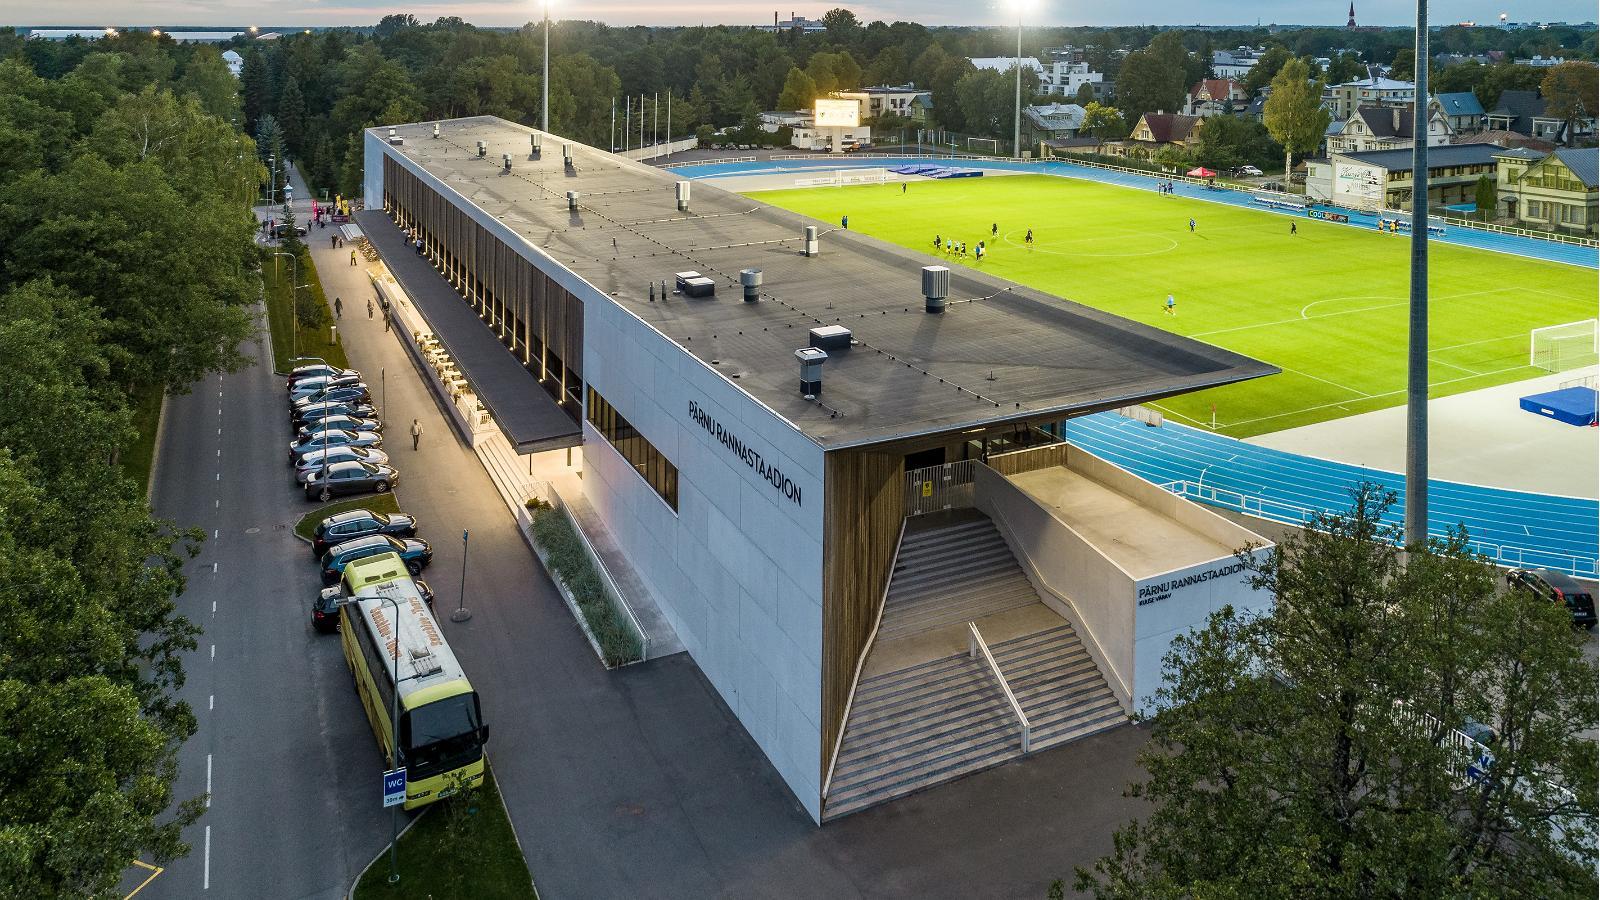 Pärnu Beach Stadium